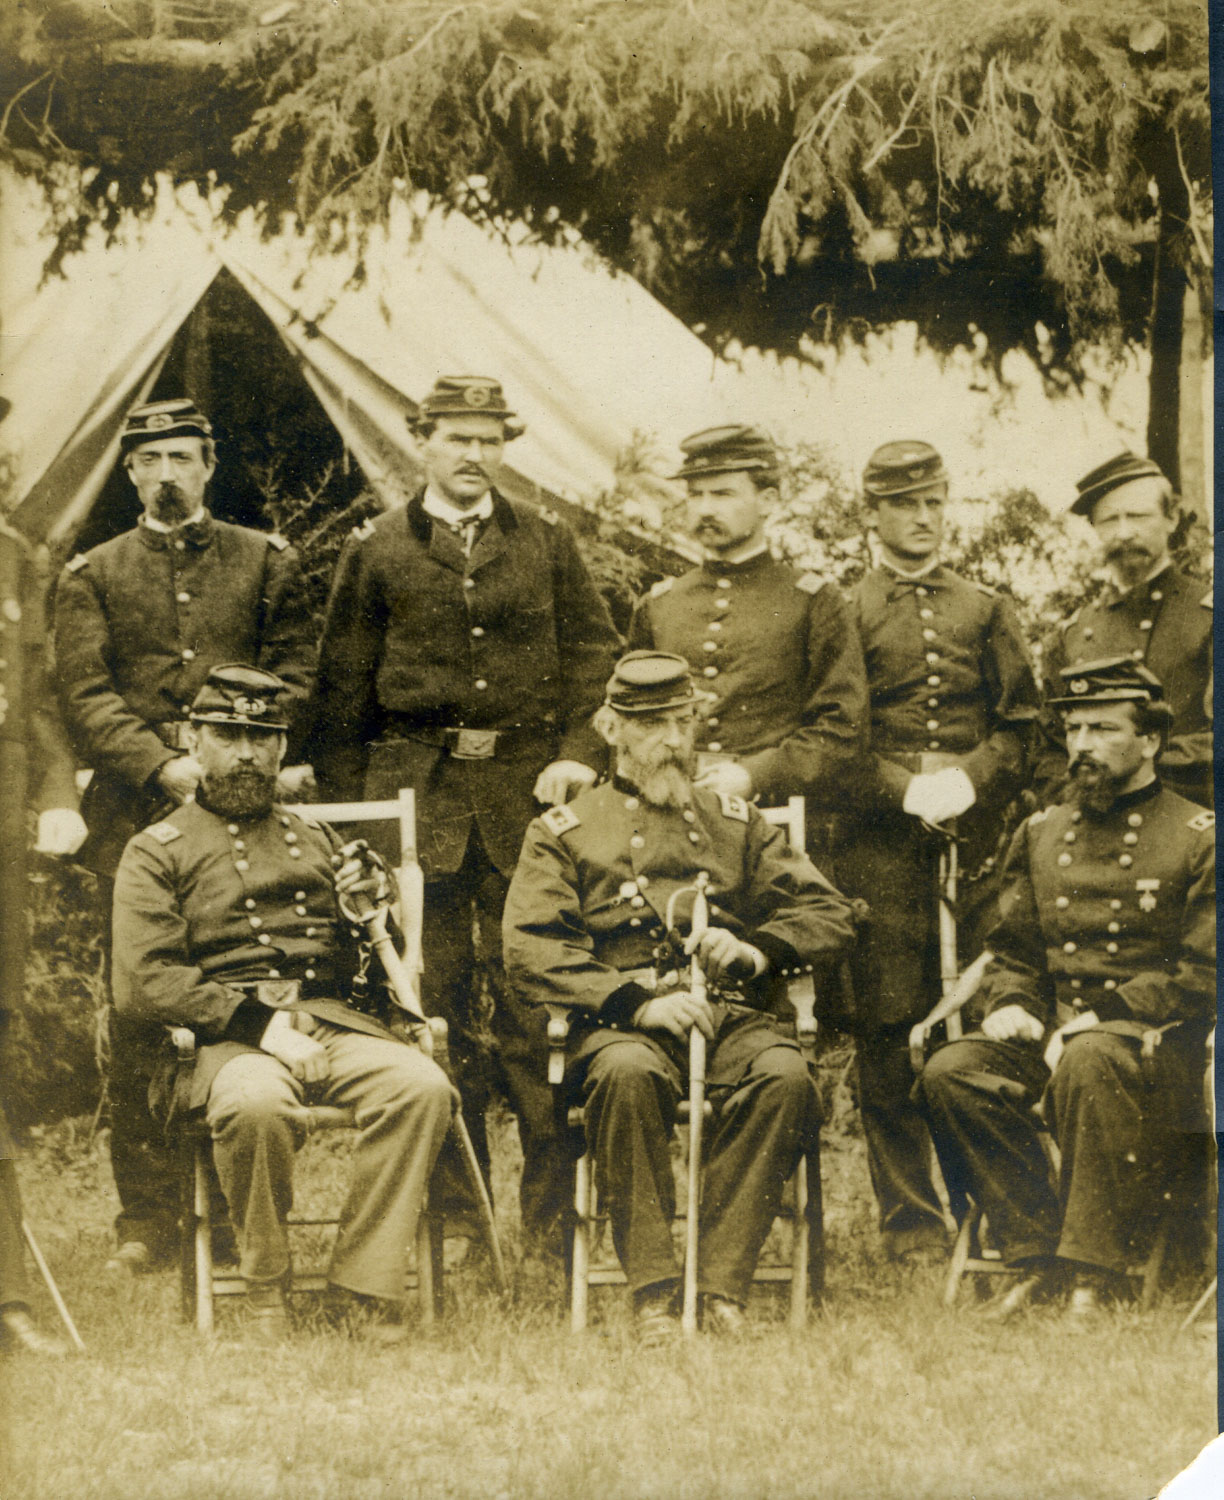 Gordon Meade & Staff at Gettysburg